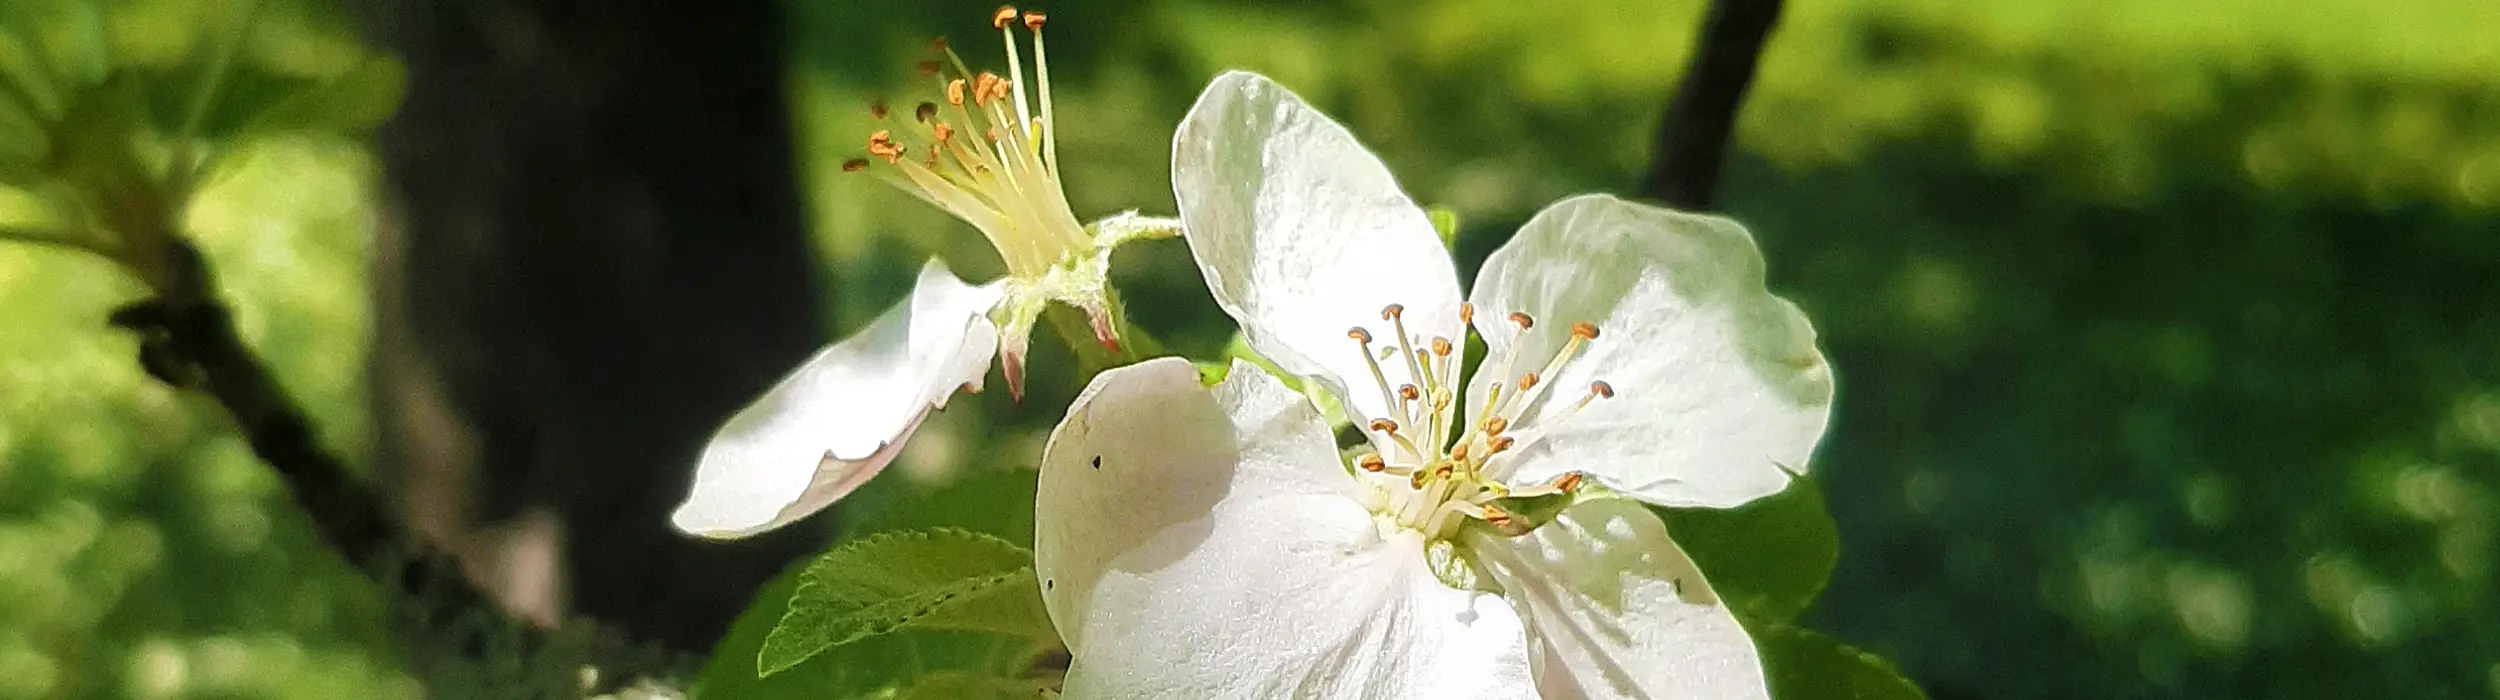 Ferienwohnung Fini Schneider - Kirschblüte im Obstgarten